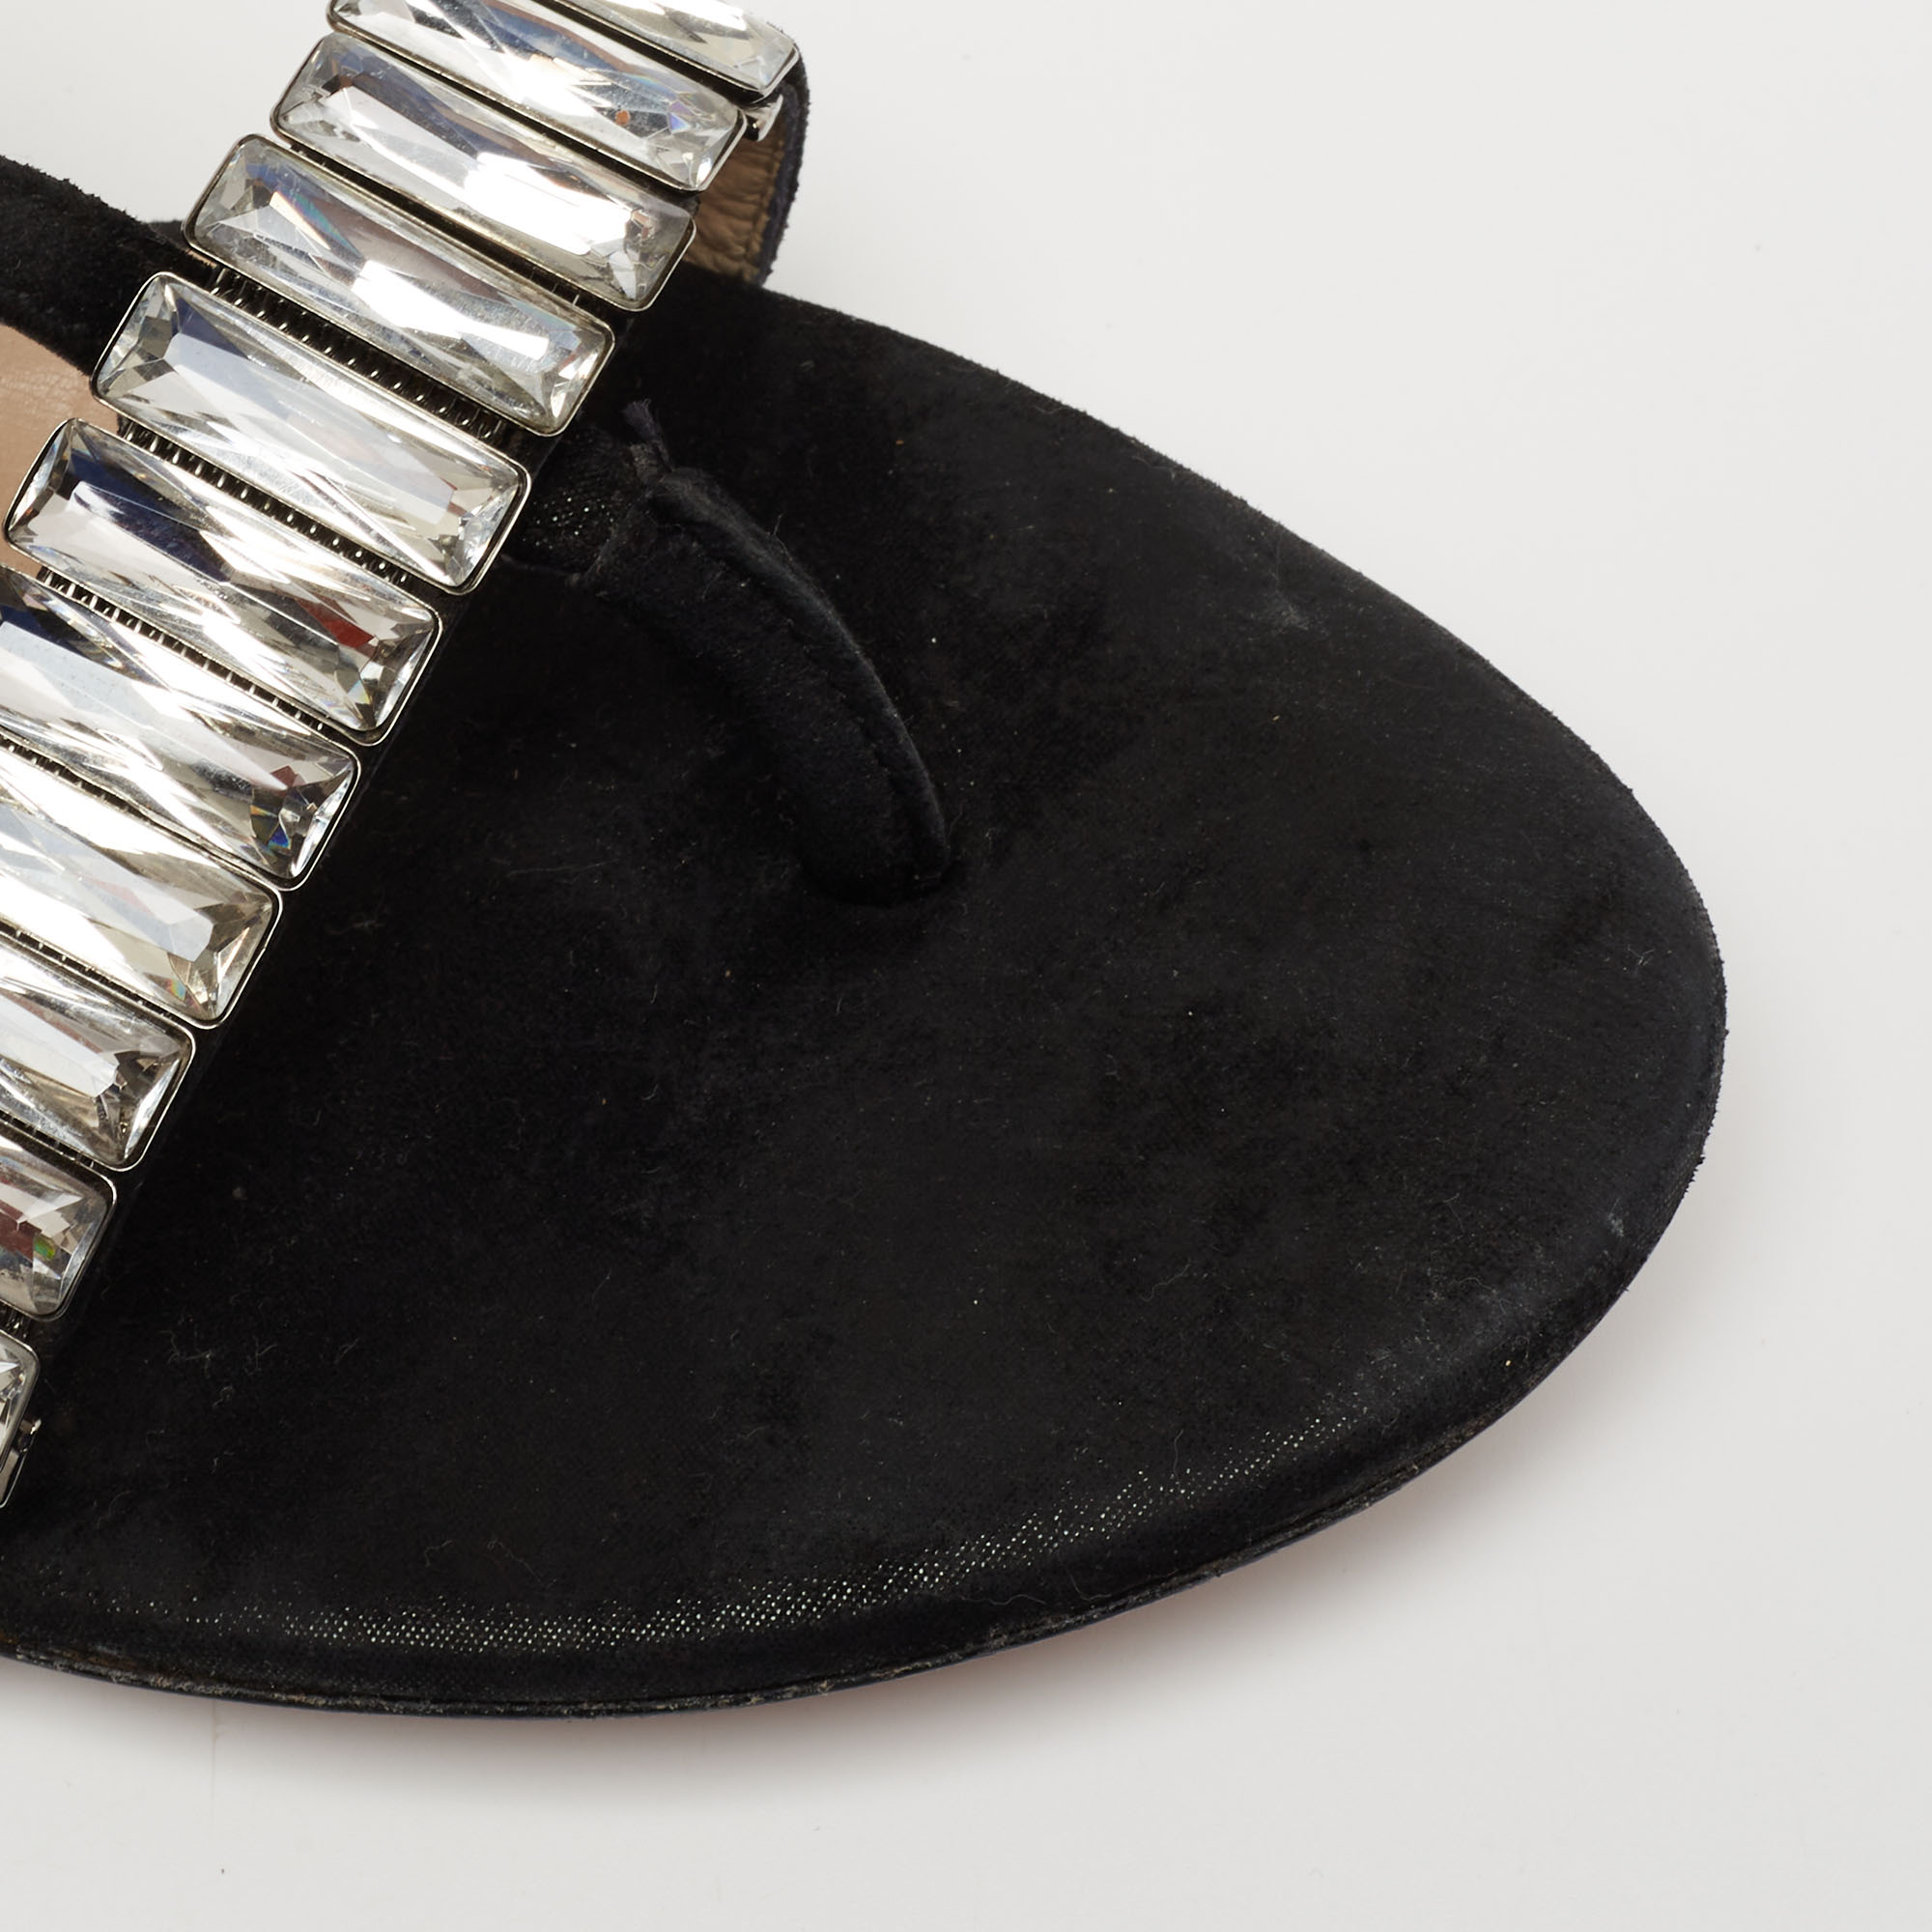 Jimmy Choo Black Suede Crystal Embellished Flat Sandals Size 37